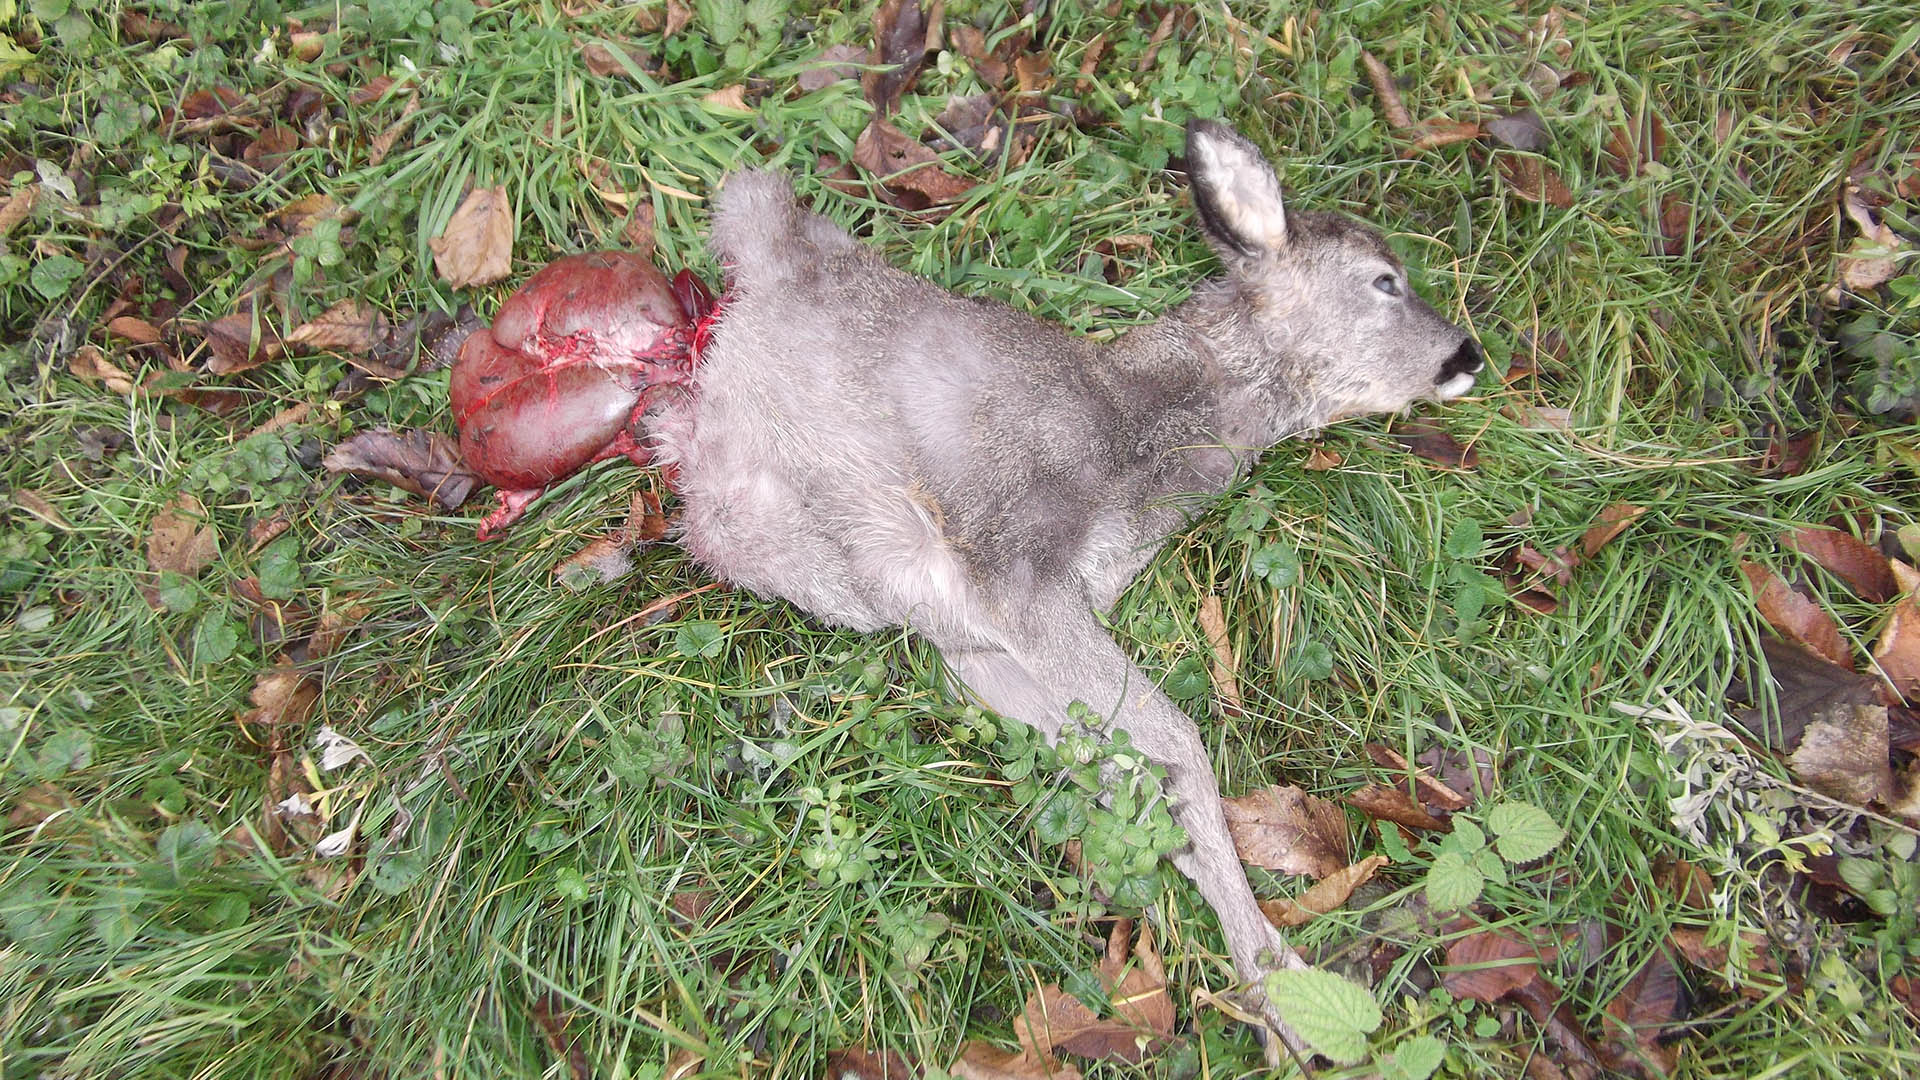 La predazione del lupo ha influssi importanti sulla zootecnia. Ma non solo. I casi di aggressione sull'uomo cominciano a farsi frequenti in tutta Europa e a preoccupare